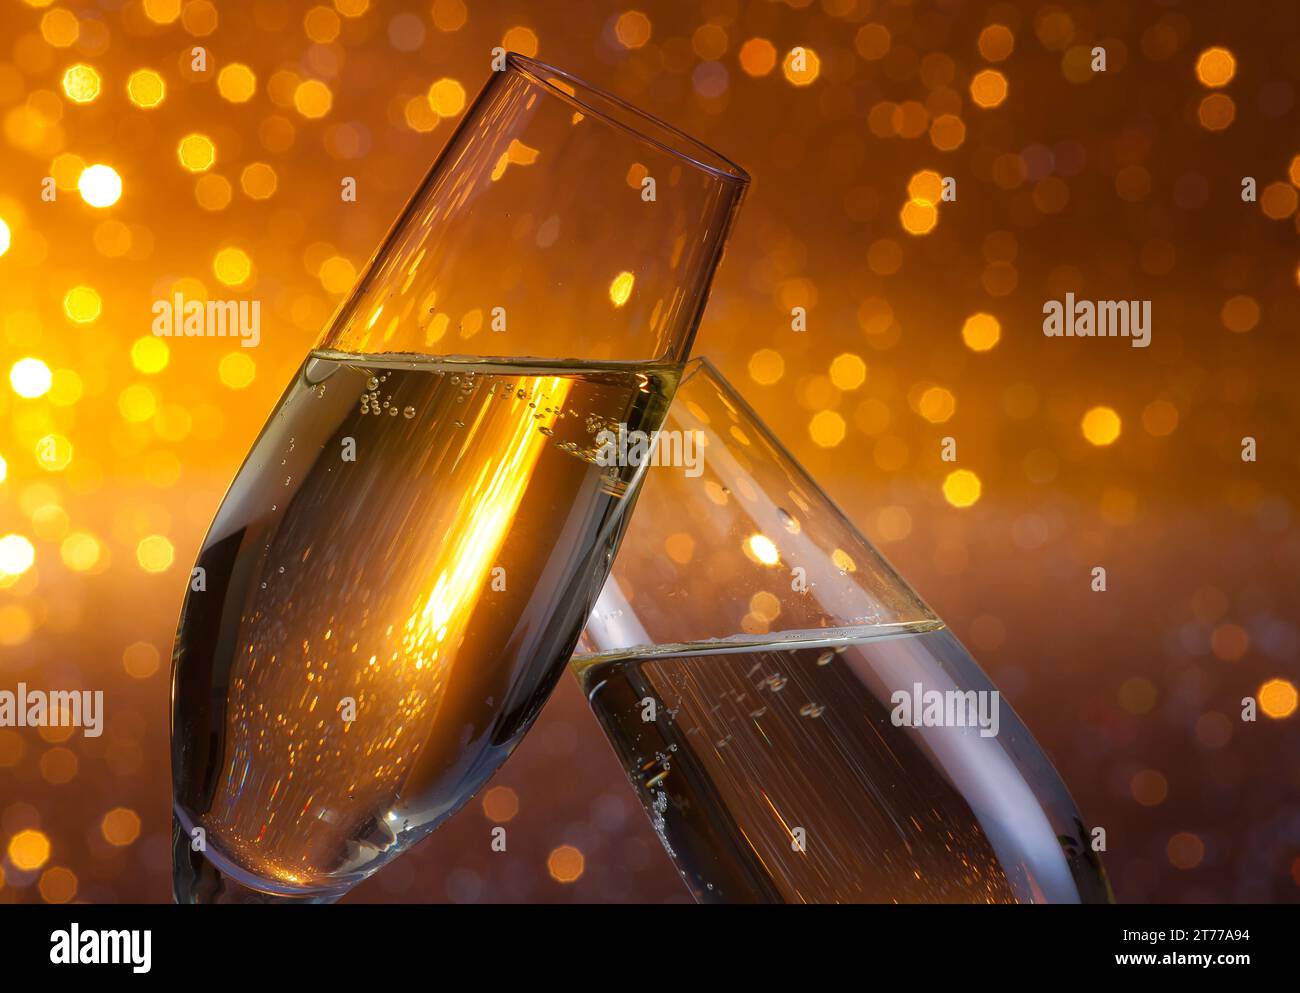 Zwei Sektflöten mit goldenen Luftblasen geben Anfeuerungen auf dunklem, hellem Bokeh-Hintergrund Stockfoto